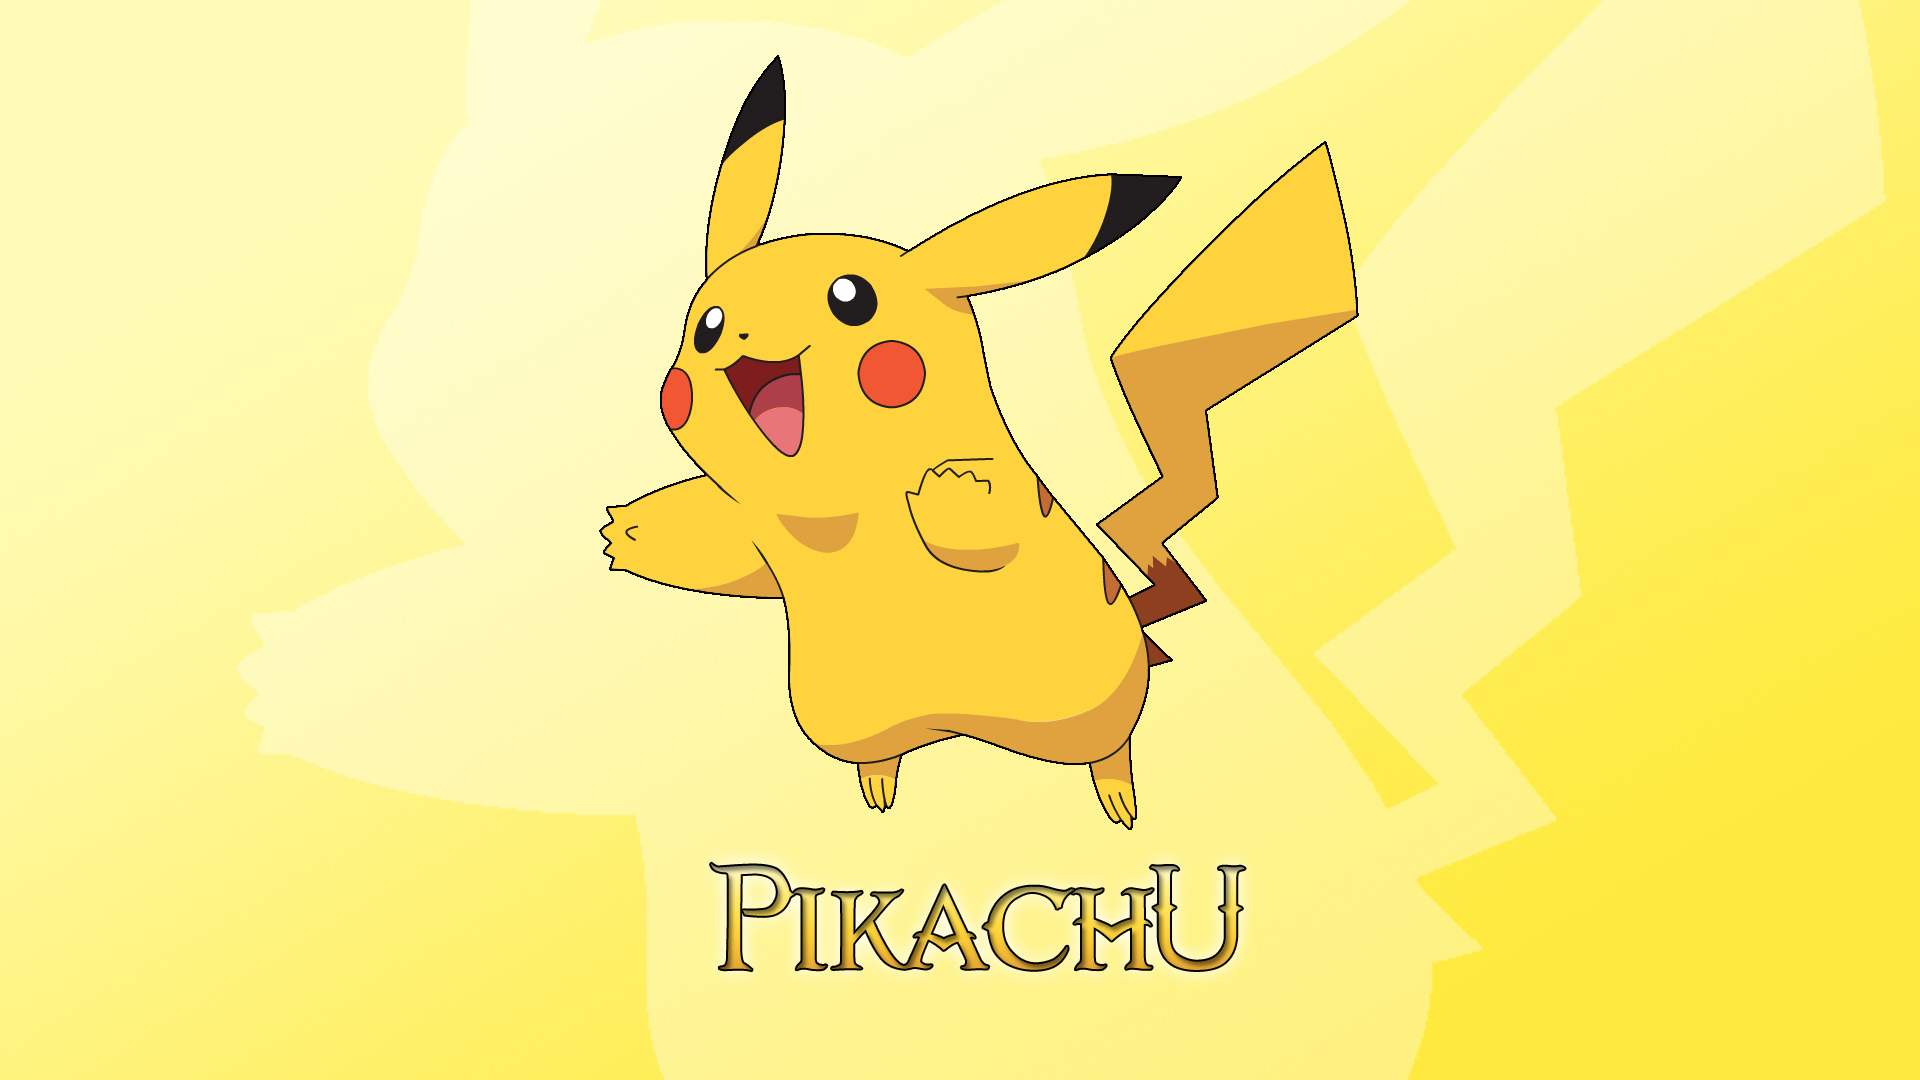 42+] Pikachu HD Wallpaper - WallpaperSafari